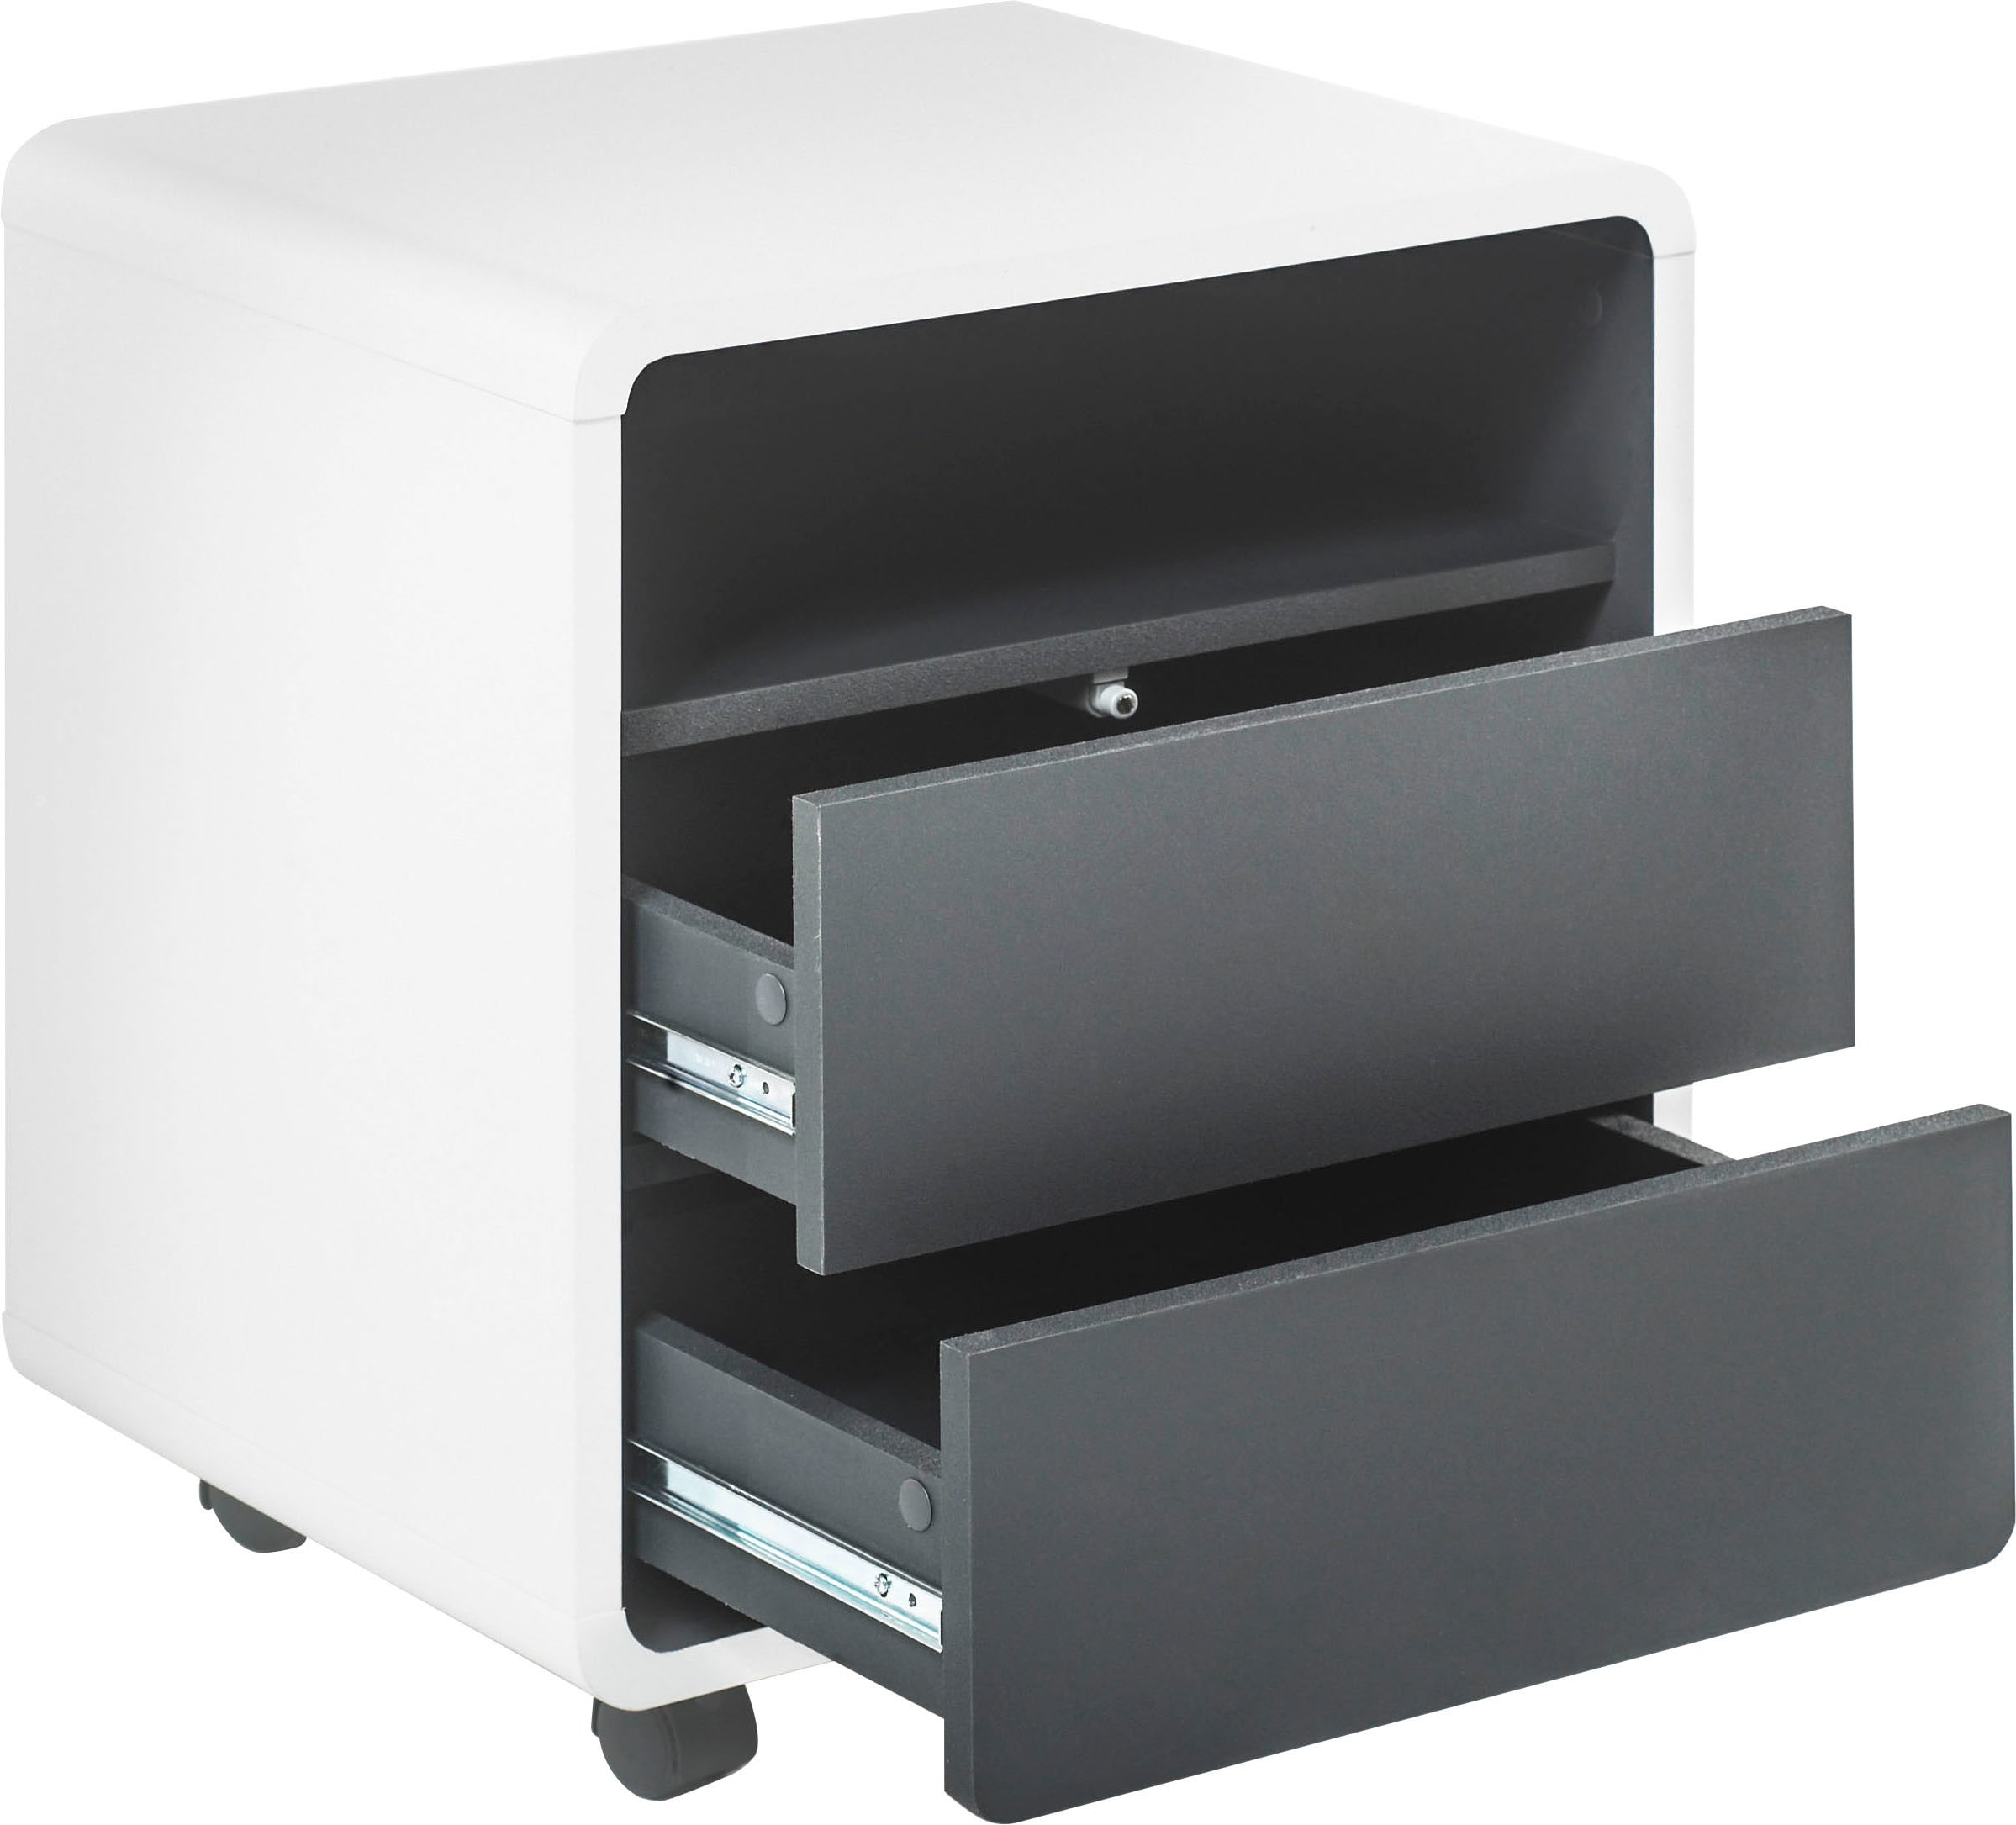 MCA furniture Rollcontainer »Tadeo«, weiss matt, Absetzungen in Grau Matt